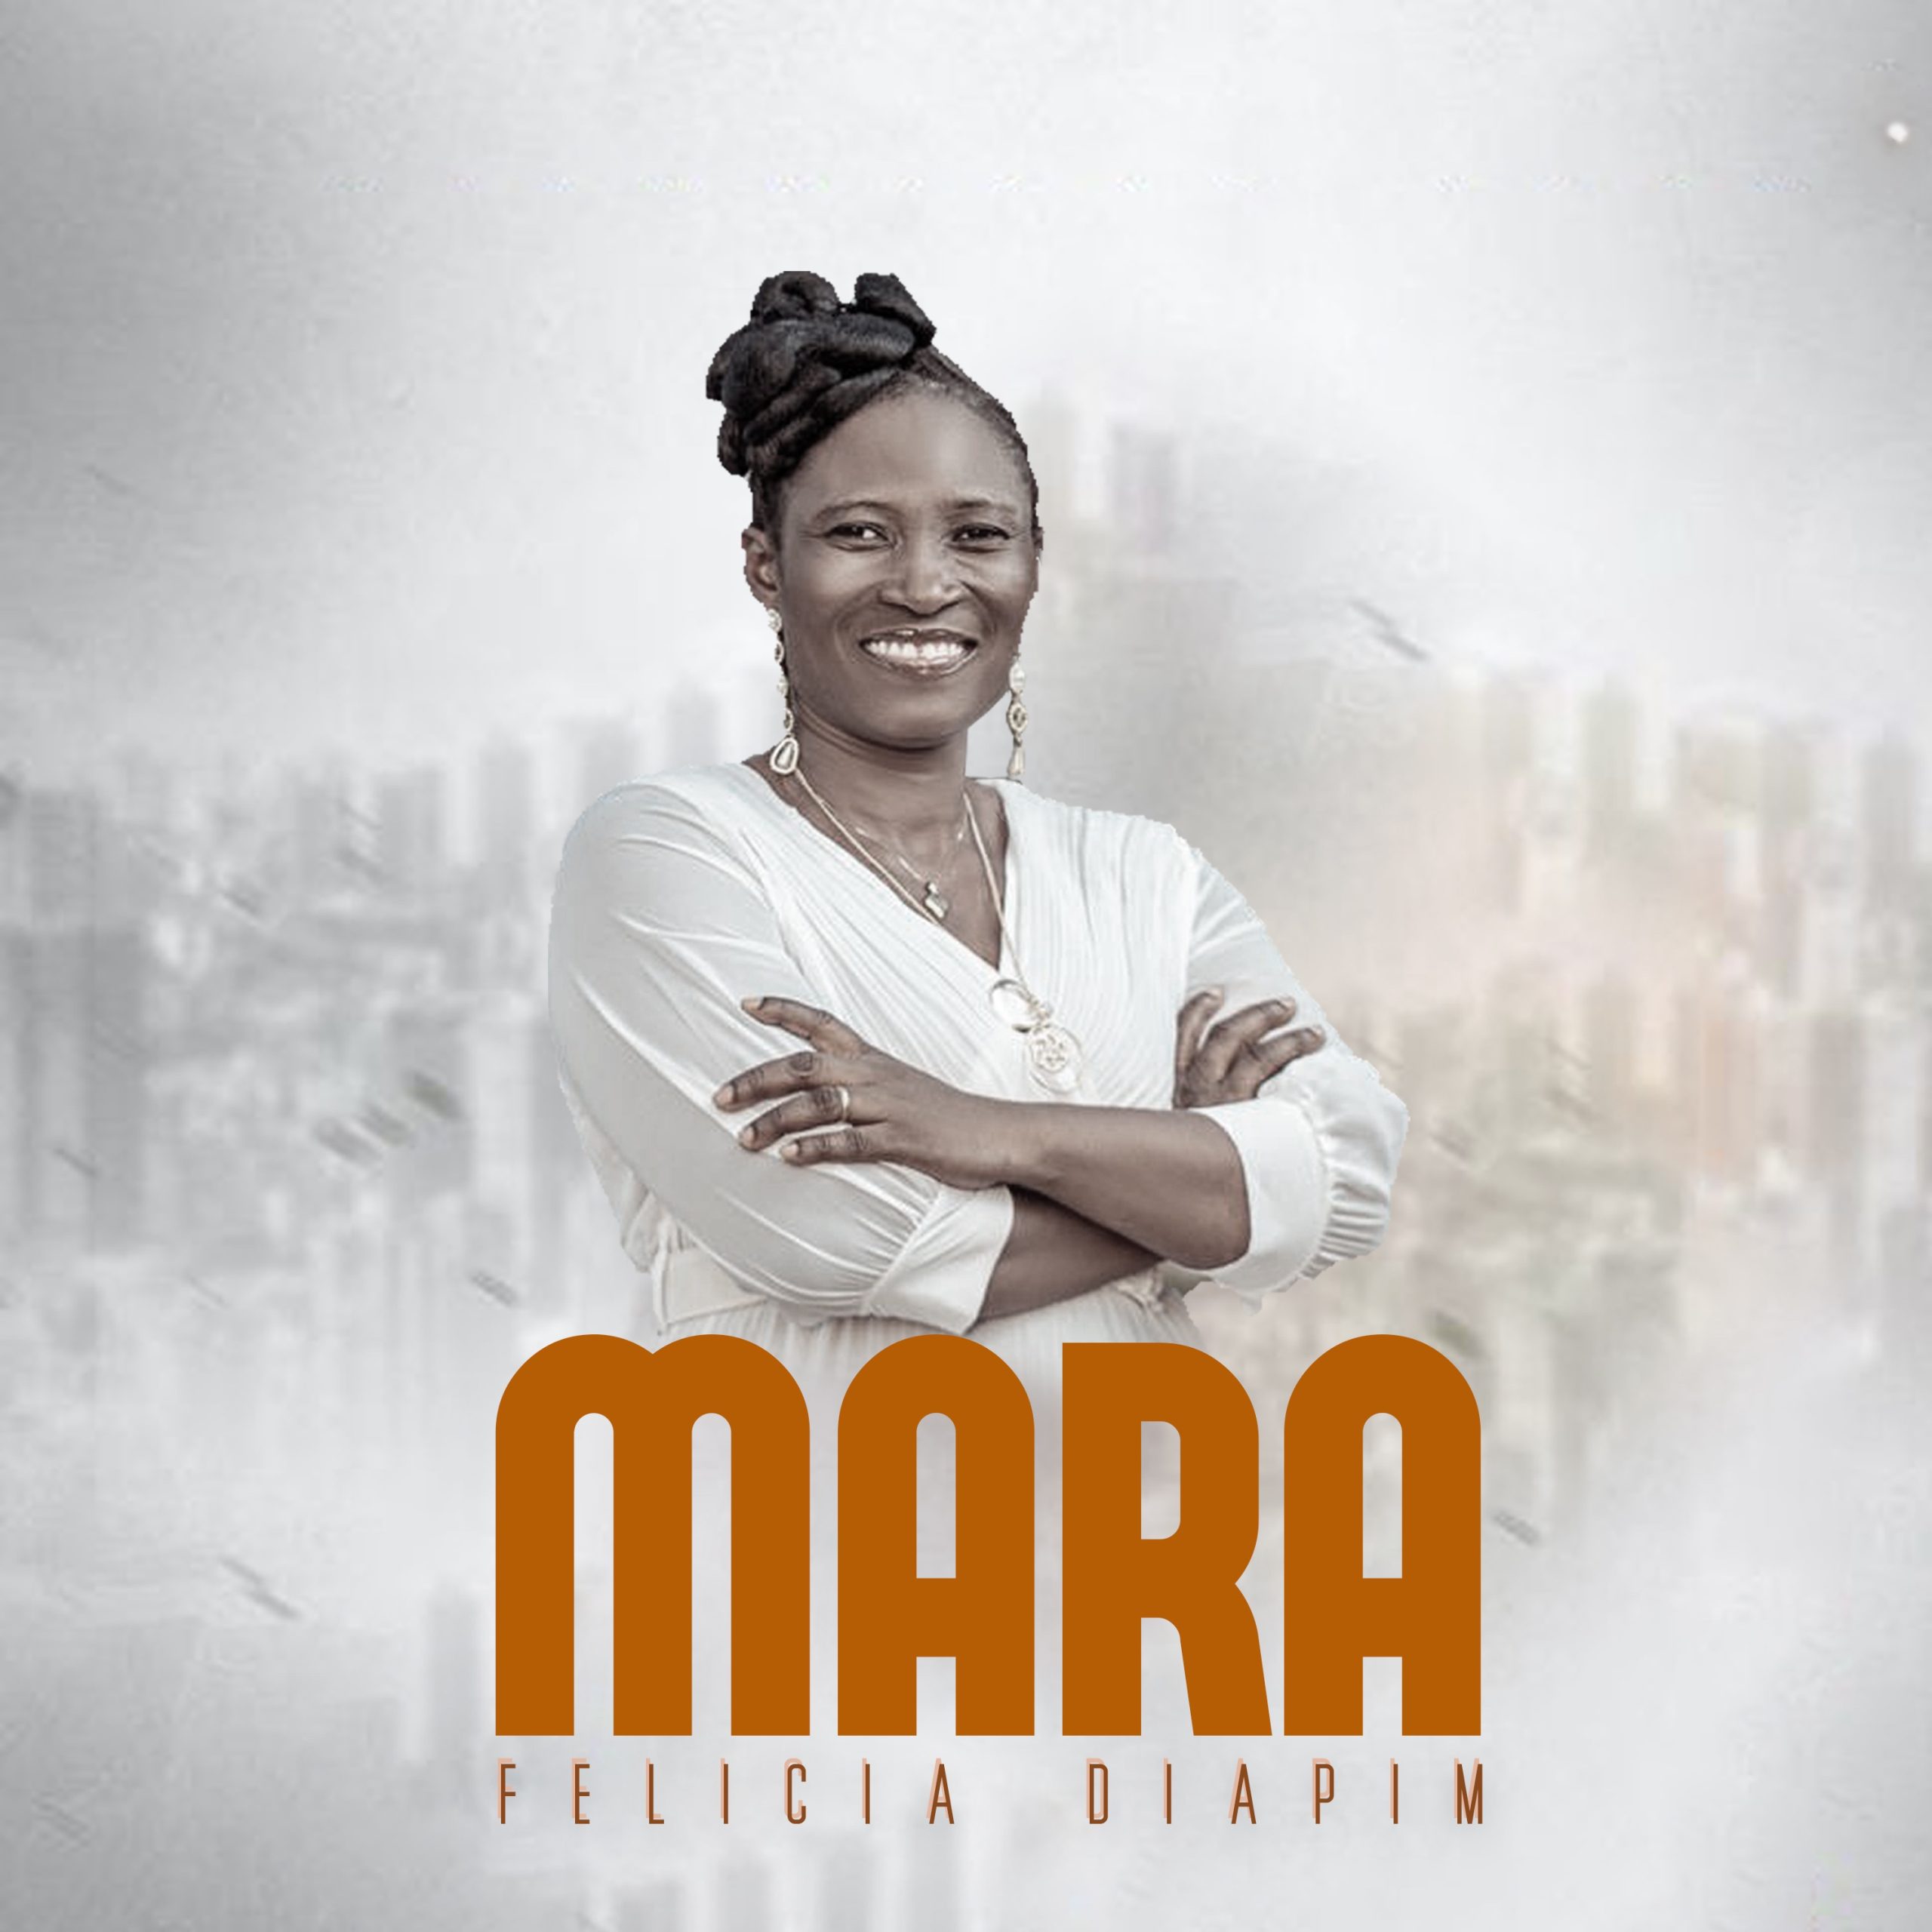 Mama Feli - Mara